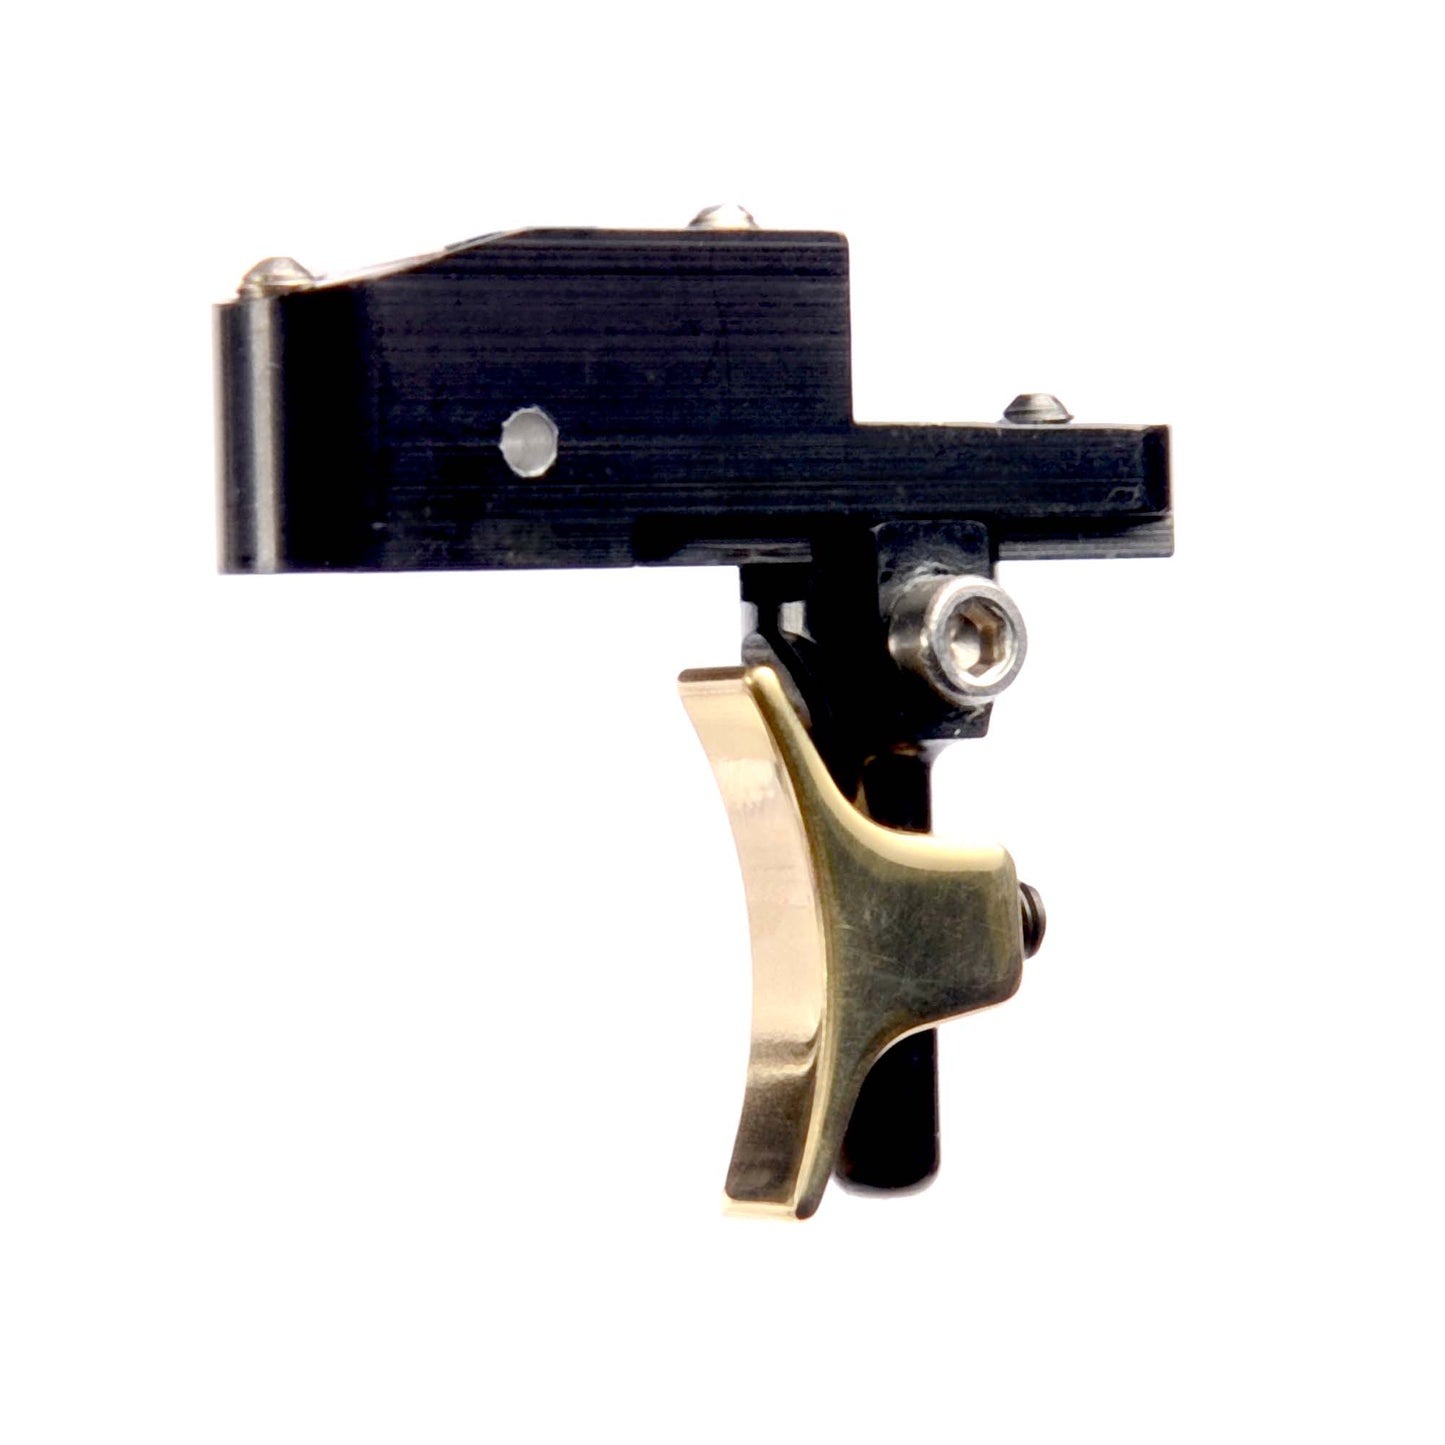 Daystate MK 3/4 Adjustable trigger